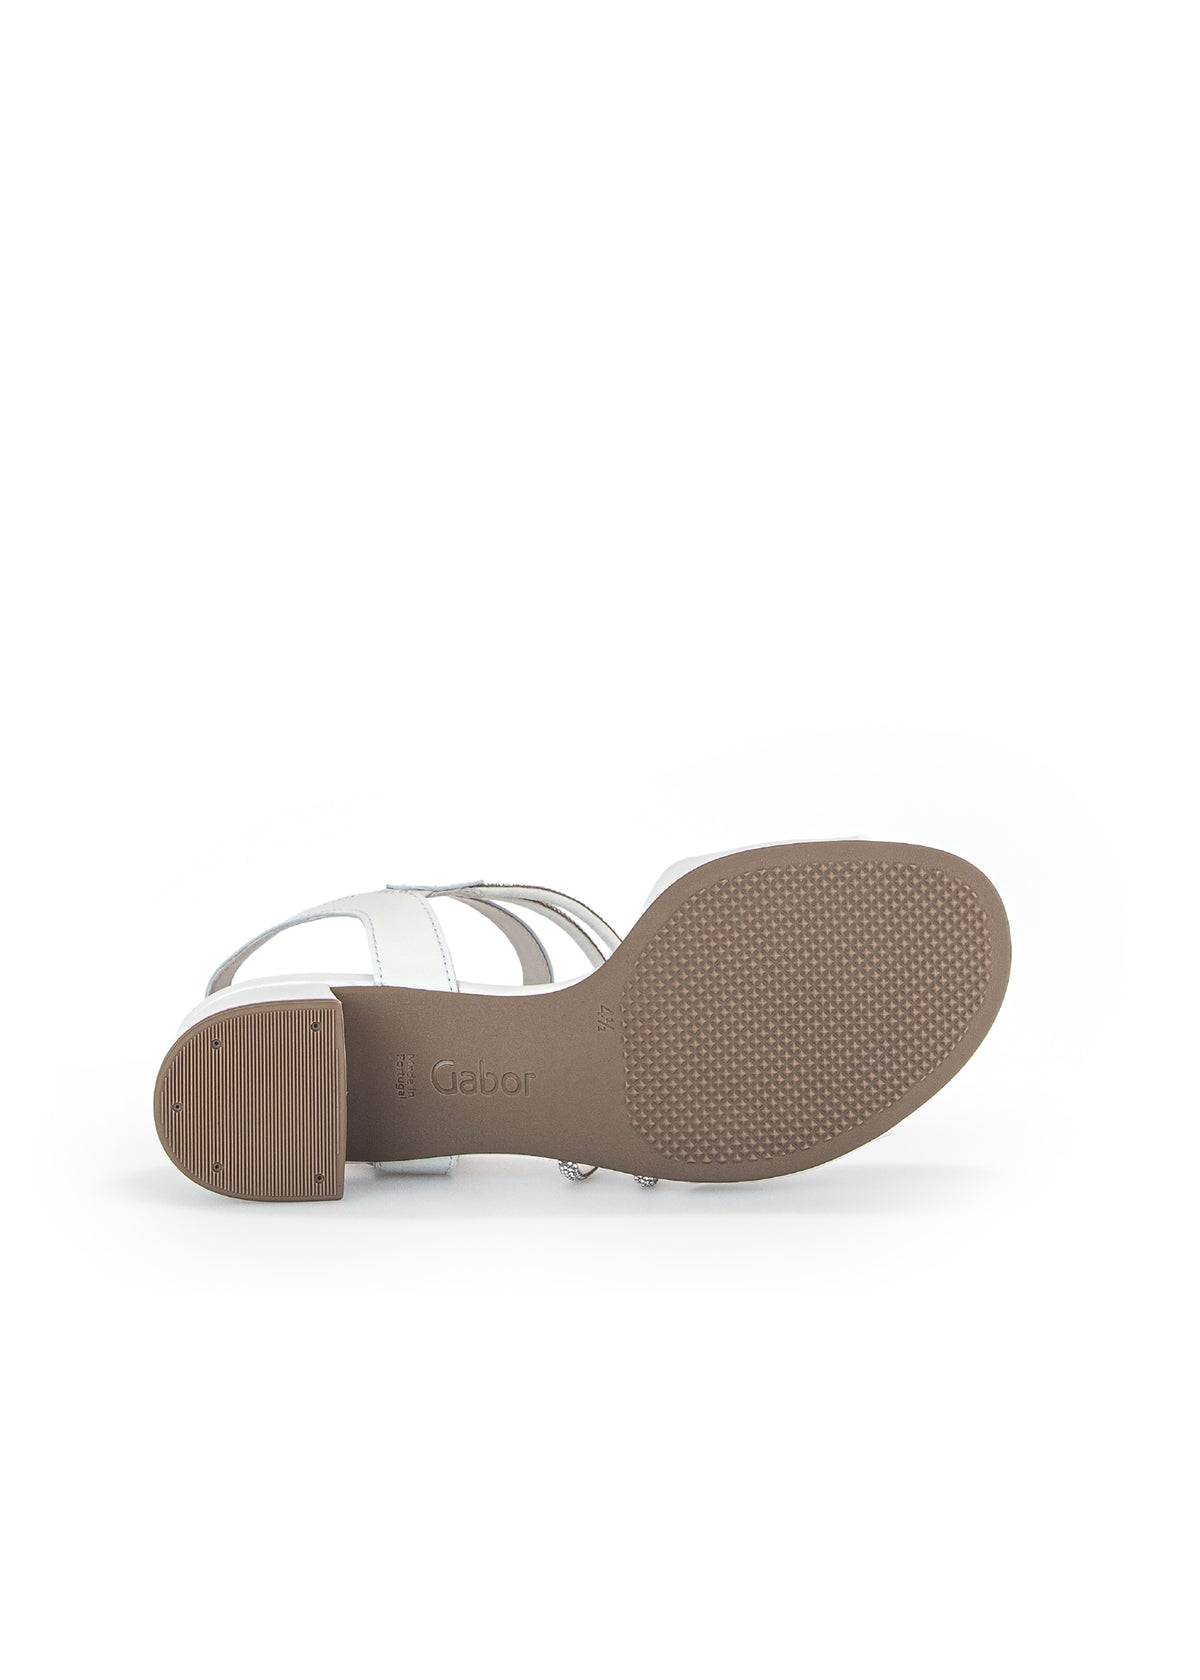 Festliga sandaler med dubbade klackar - vitt läder, silverband